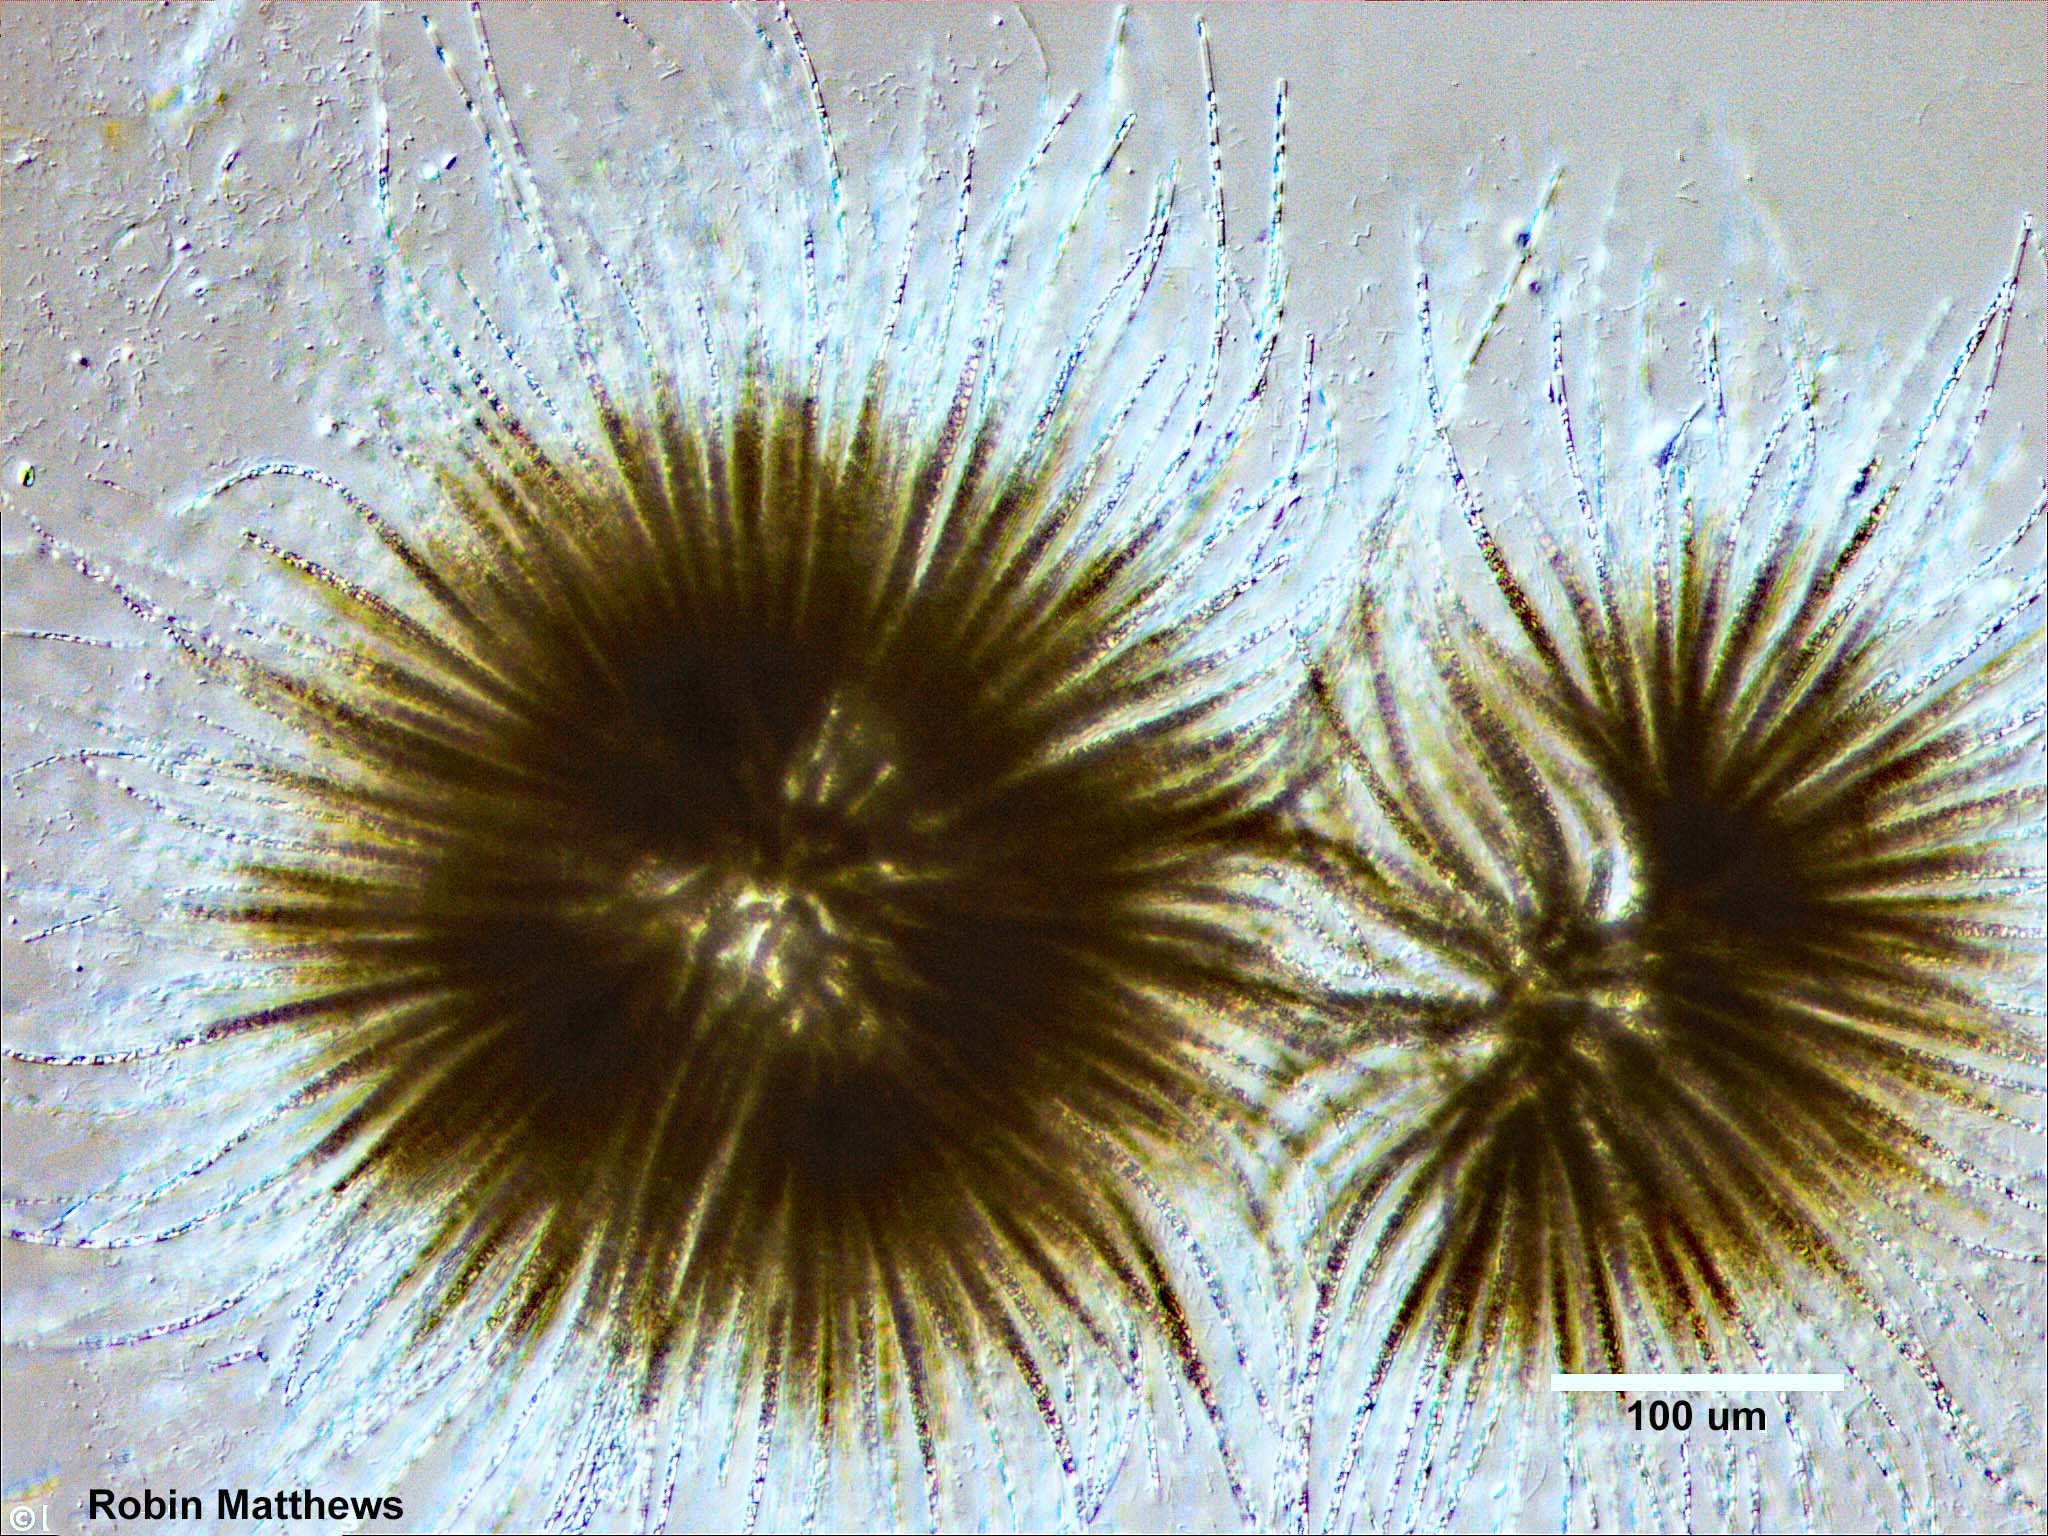 Cyanobacteria/Nostocales/Gloeotrichiaceae/Gloeotrichia/echinulata/gloeotrichia-echinulata-492.jpg